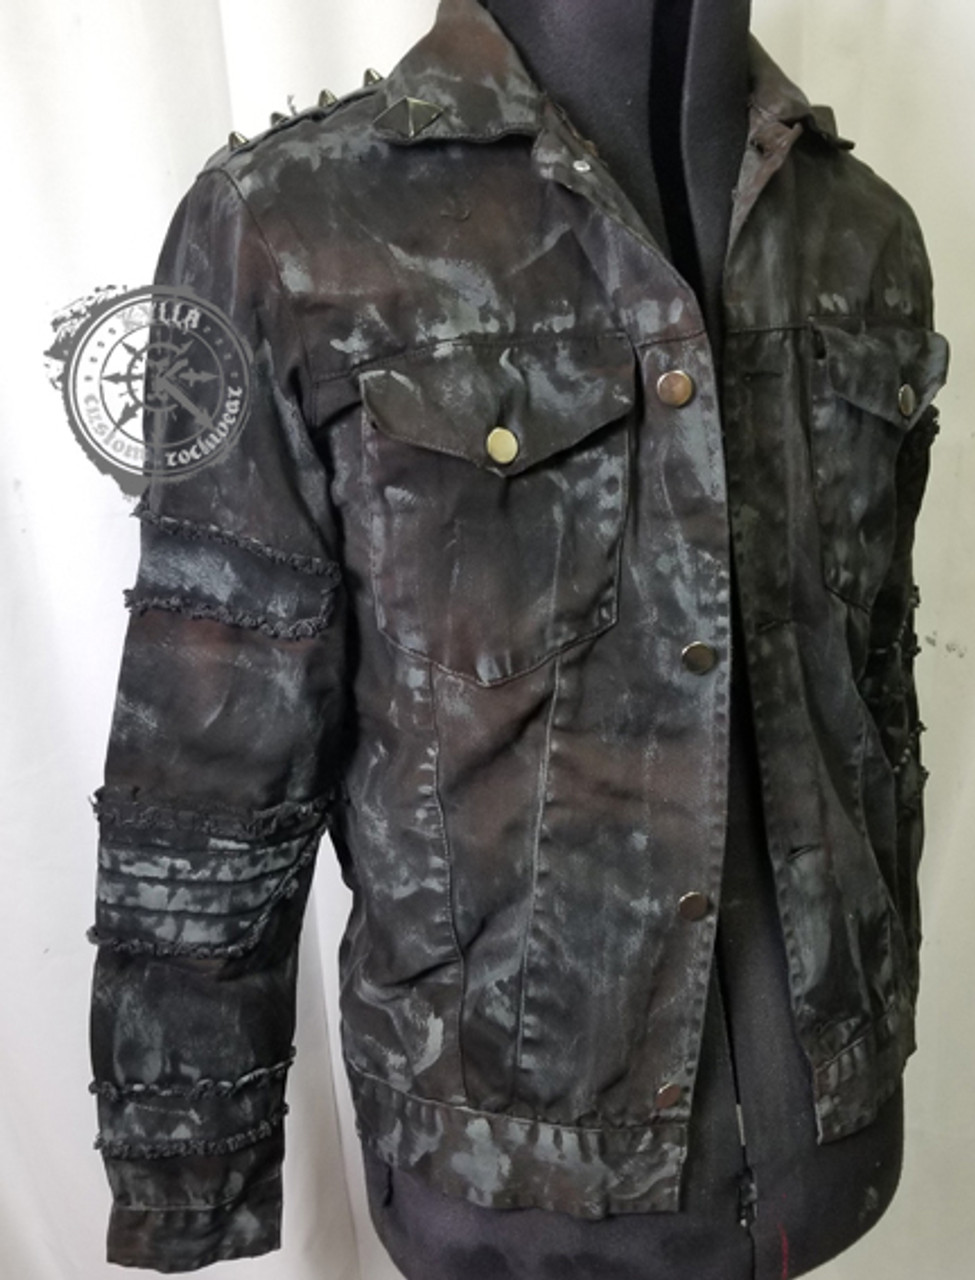 IMMORTAN - Distressed Denim Jacket - Men's size S-2XL